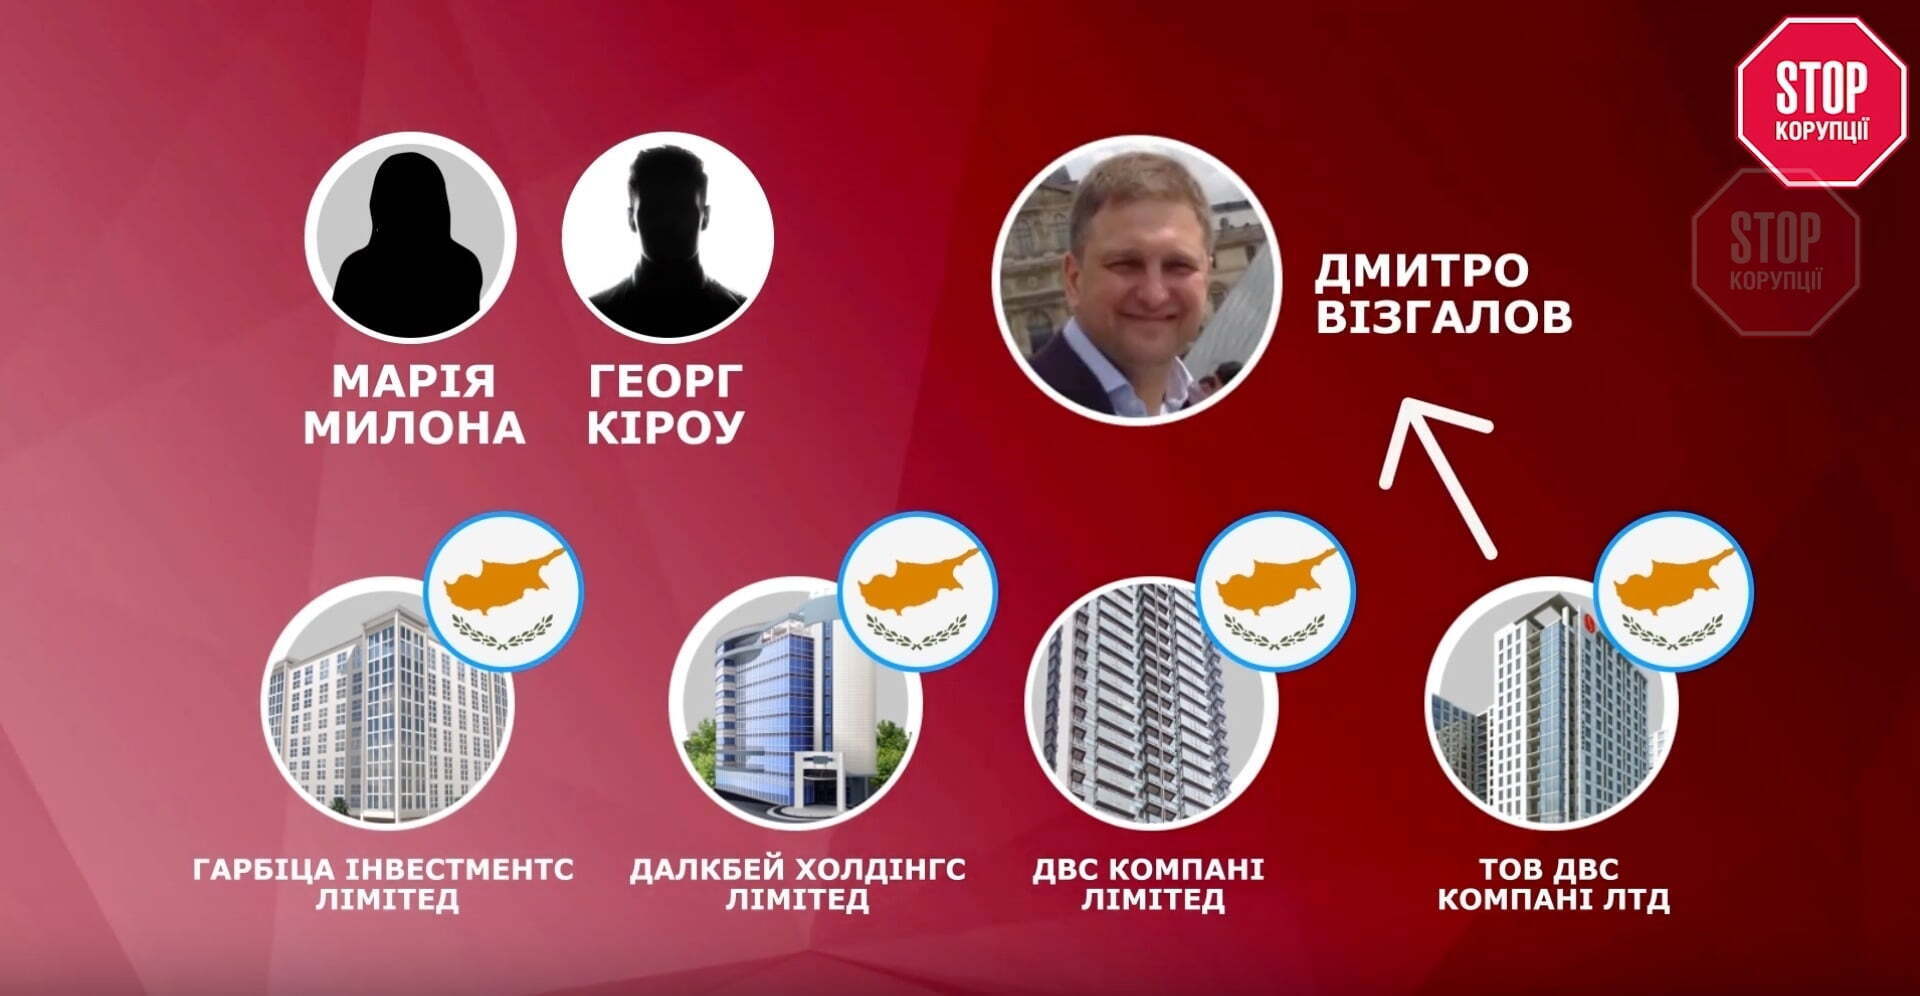 Офшорні компанії пов'язані з Дмитром Візгаловим